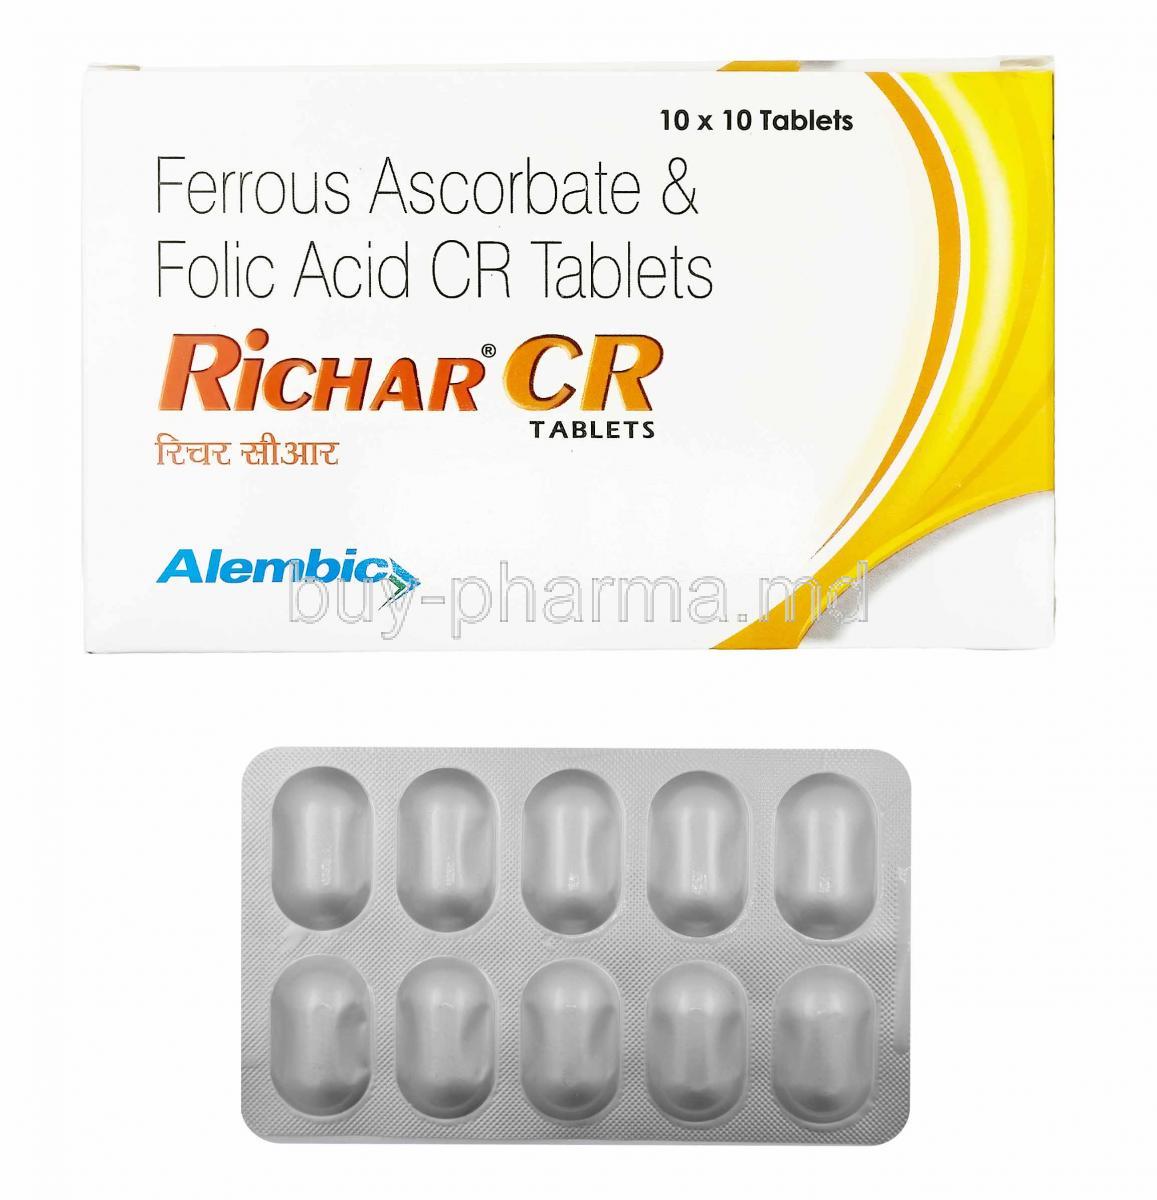 Richar CR, Iron and Folic Acid 75mg box and tablets